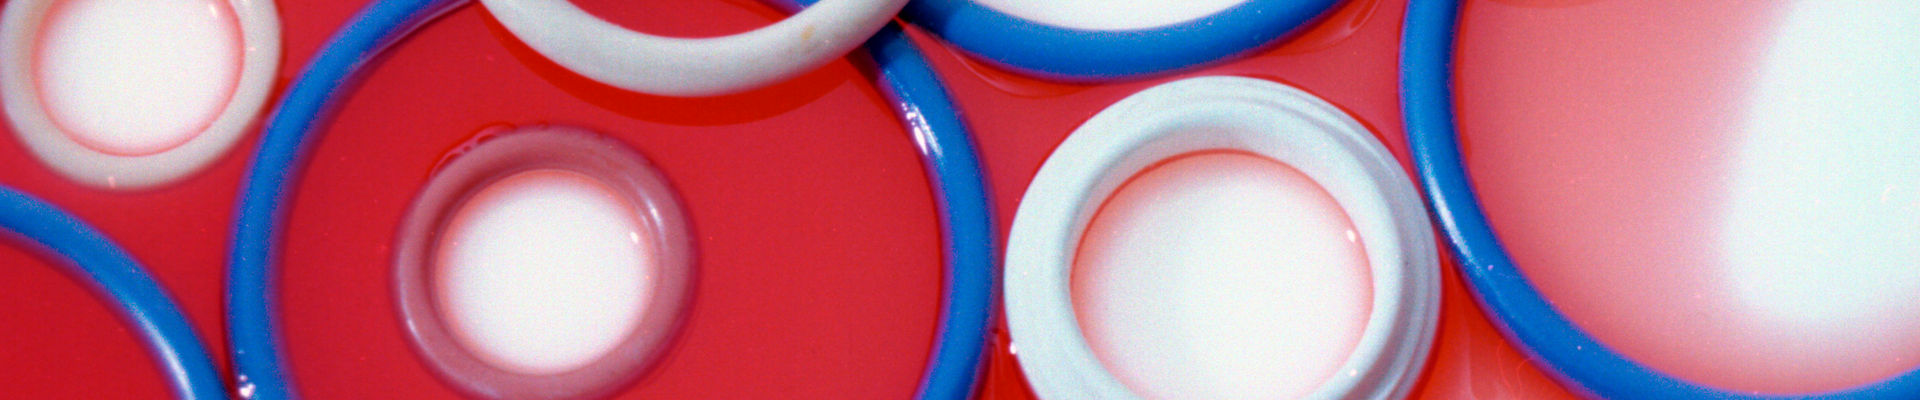 불소실리콘 고무로 성형된 다양한 색상의 O-링.